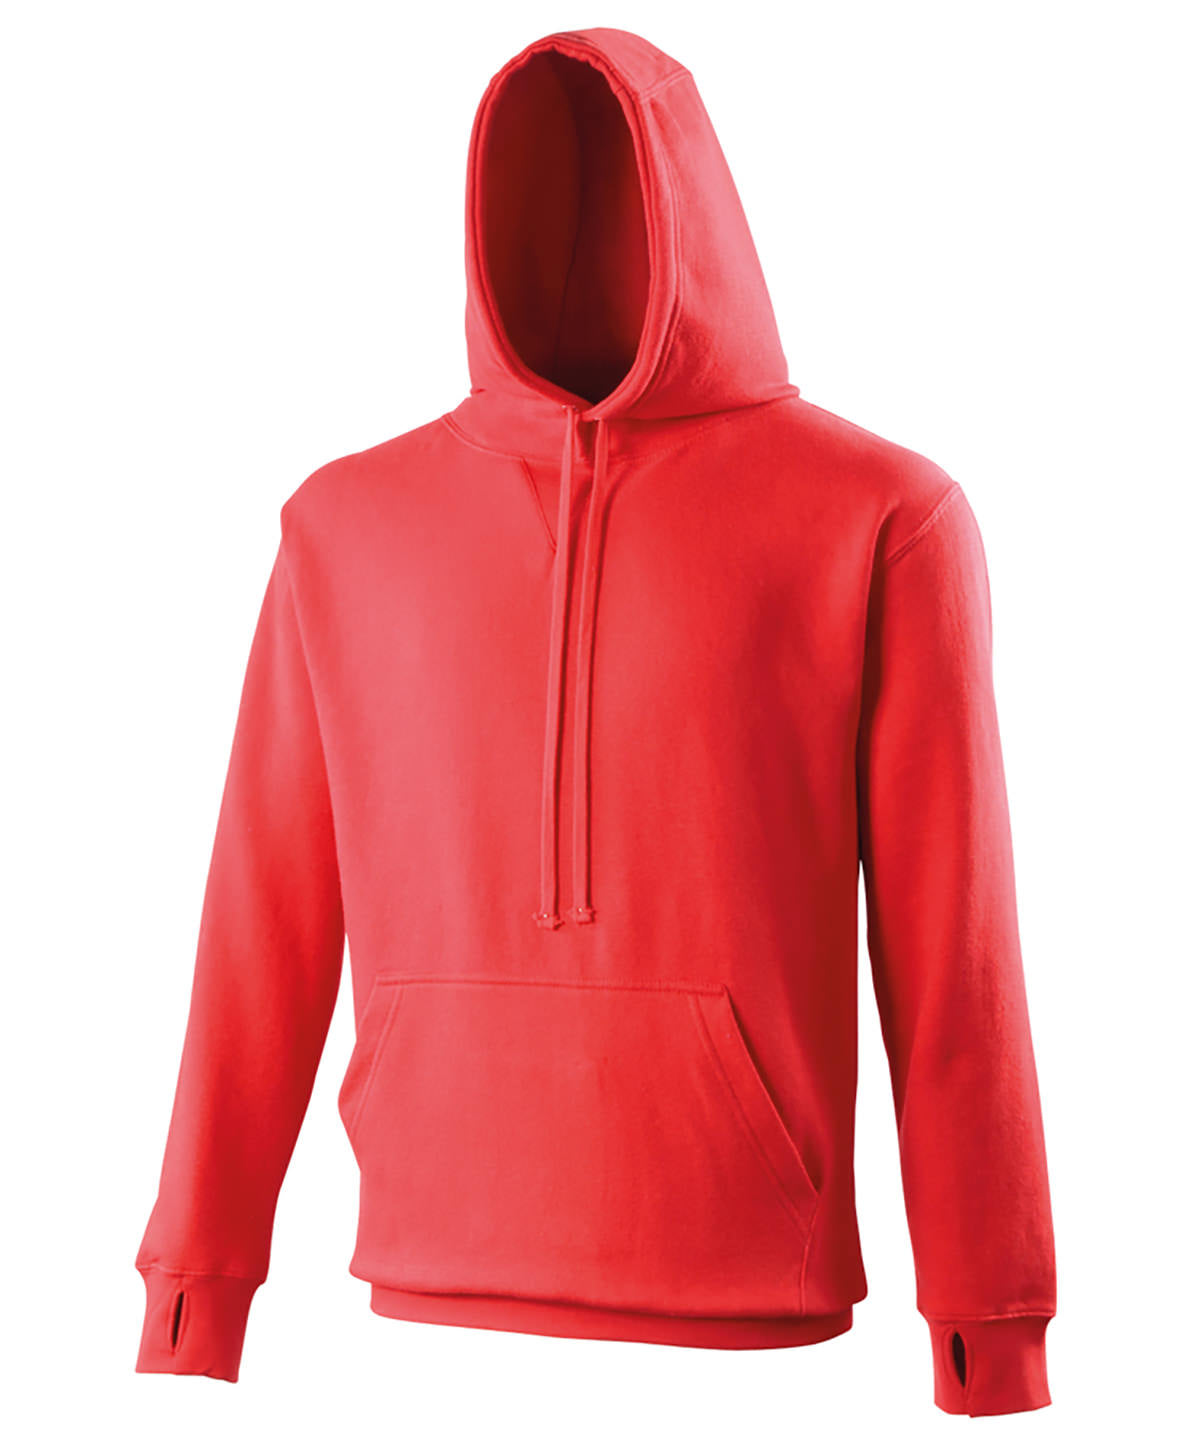 Personalised Hoodies - Dark Grey AWDis Just Hoods Street hoodie